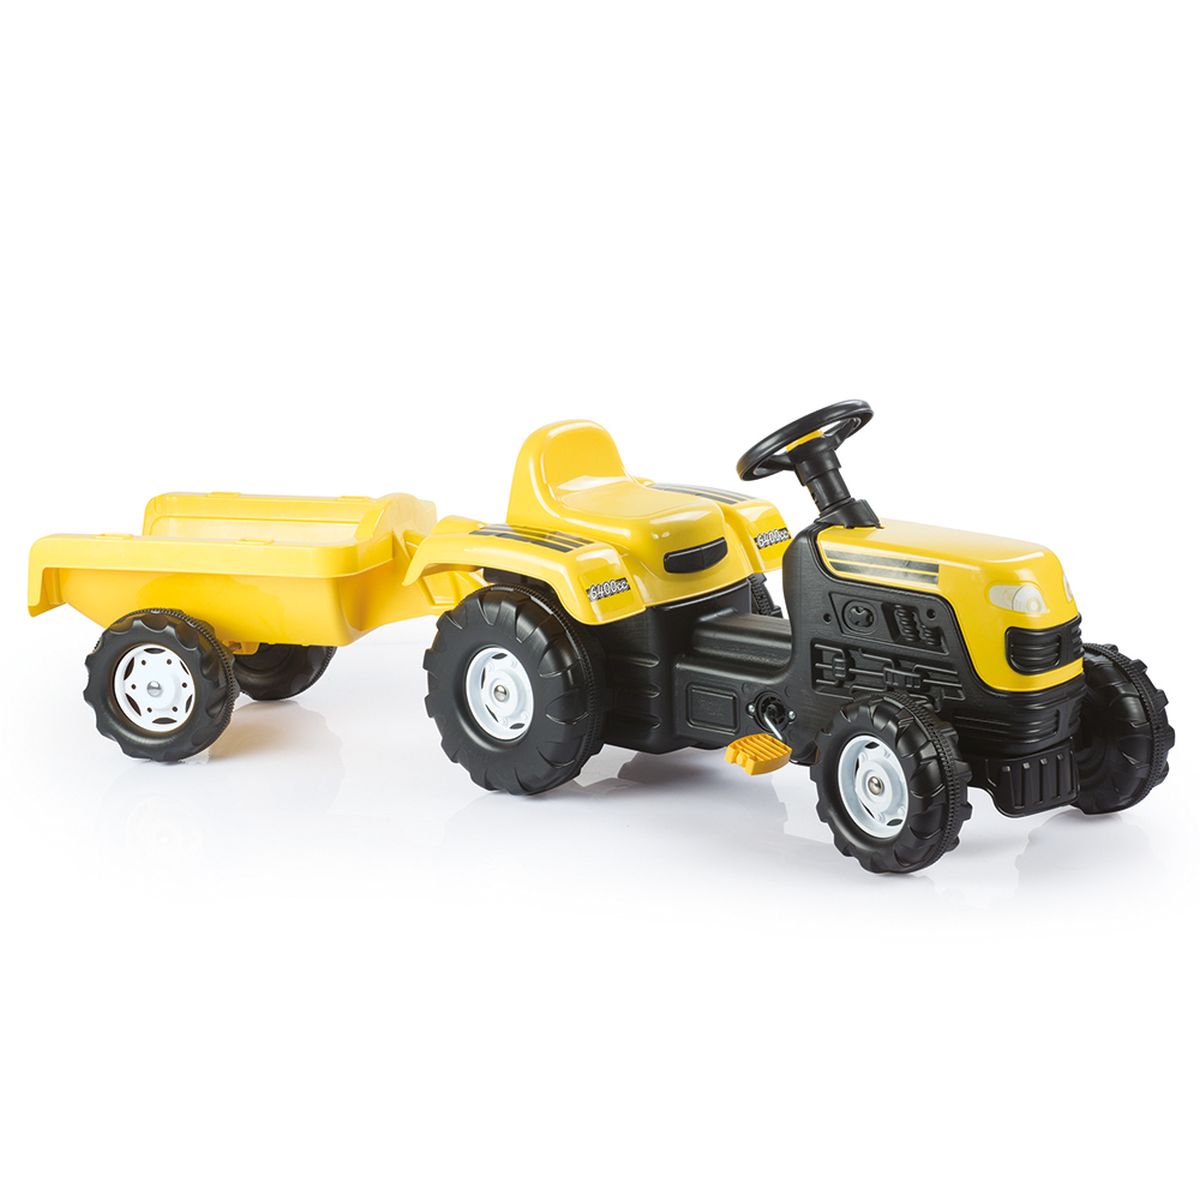 Kinder Traktor-Set Pedal Trettraktor mit Muldenkipper Anhänger Gelb Trettraktor